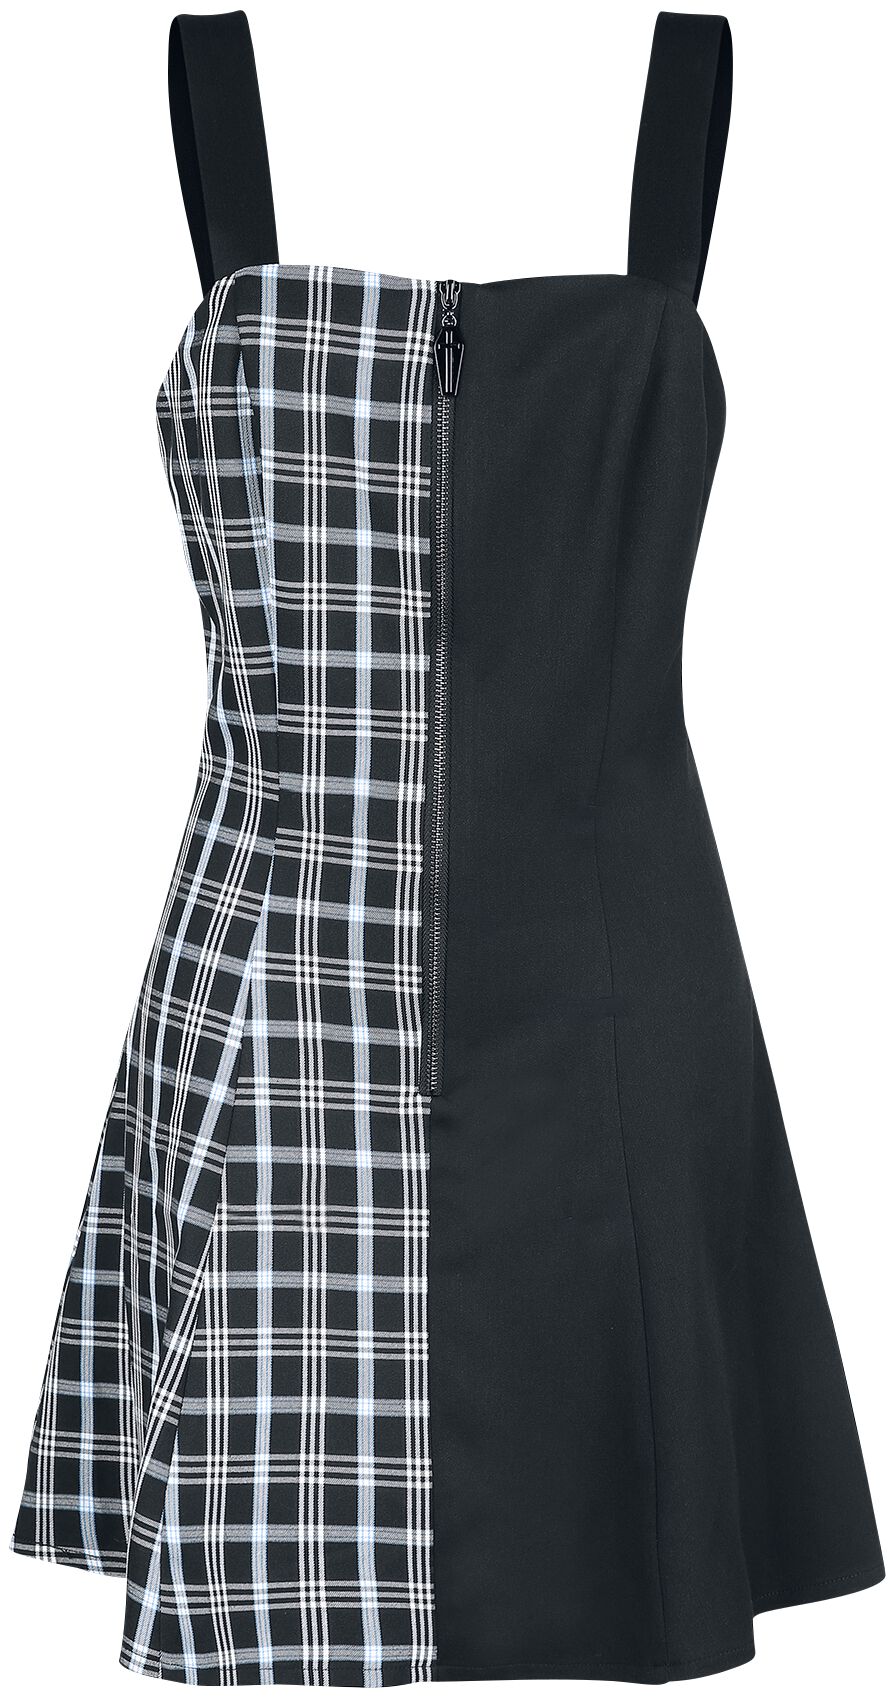 Banned Alternative - Gothic Kurzes Kleid - Death Check Dress - XS bis XXL - für Damen - Größe XS - schwarz/blau